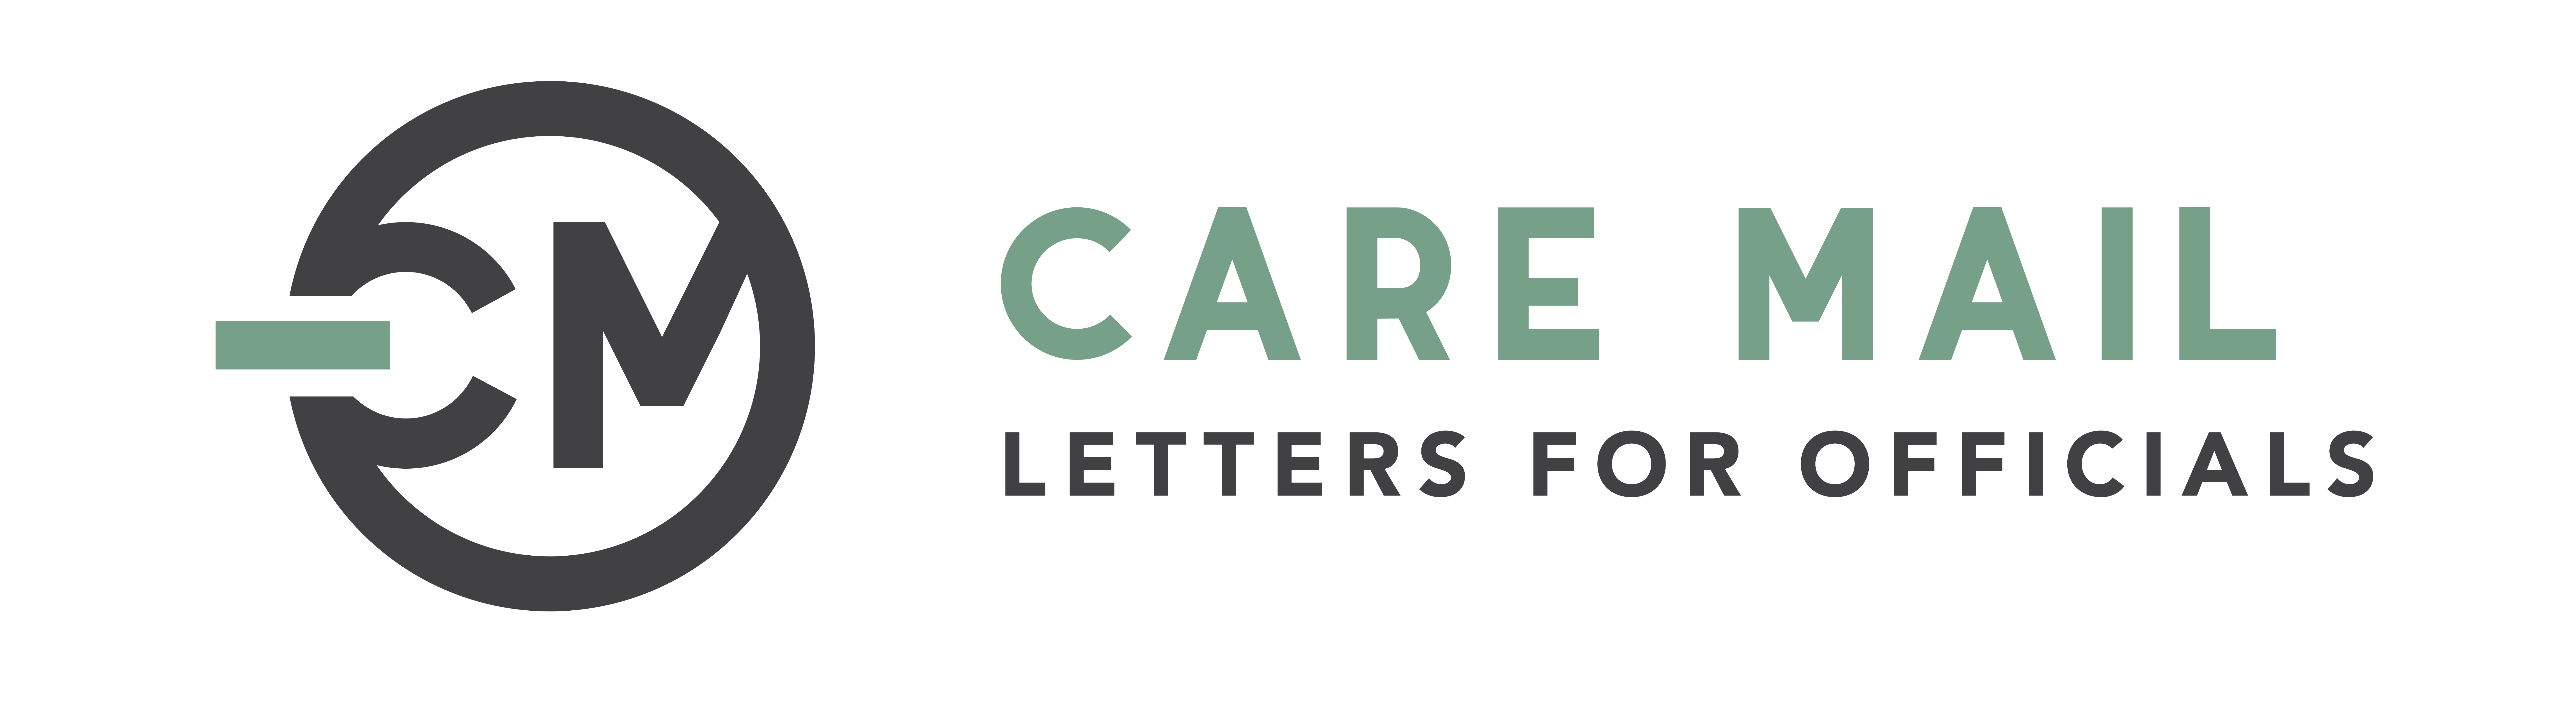 caremail logo